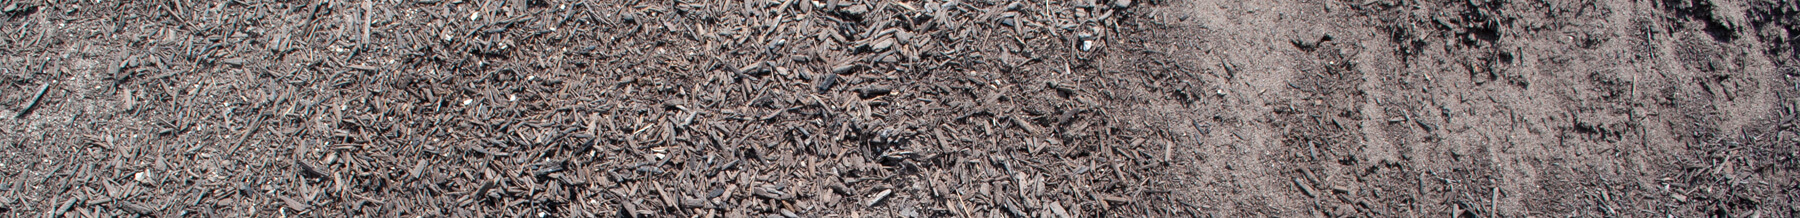 close up wide shot of potting soil